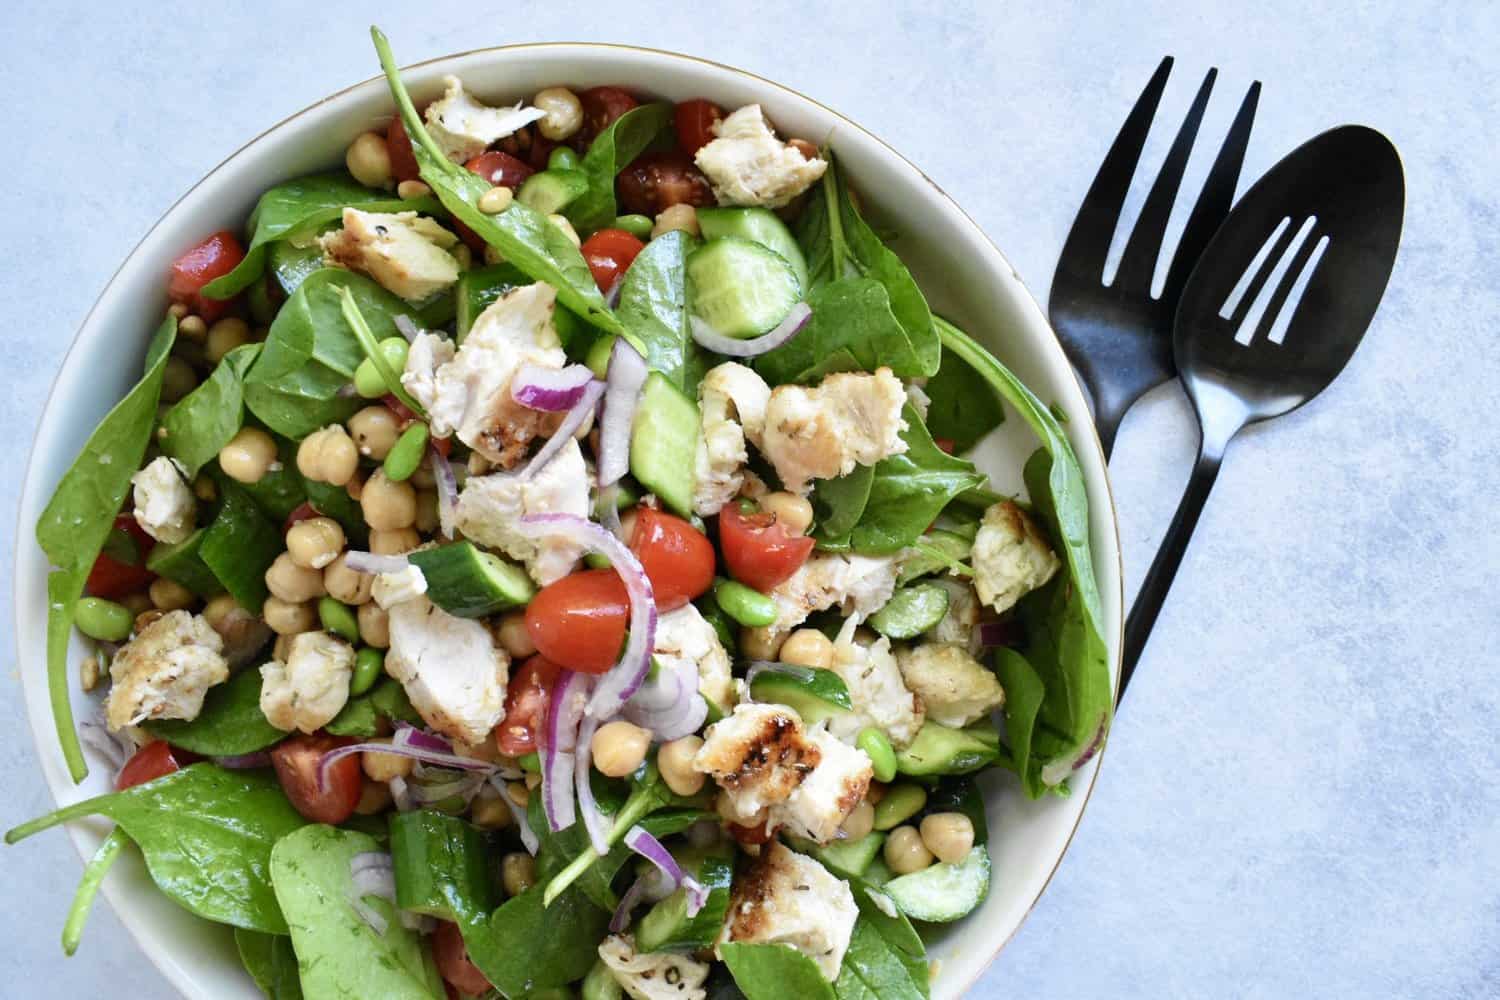 potluck salad recipes make-ahead